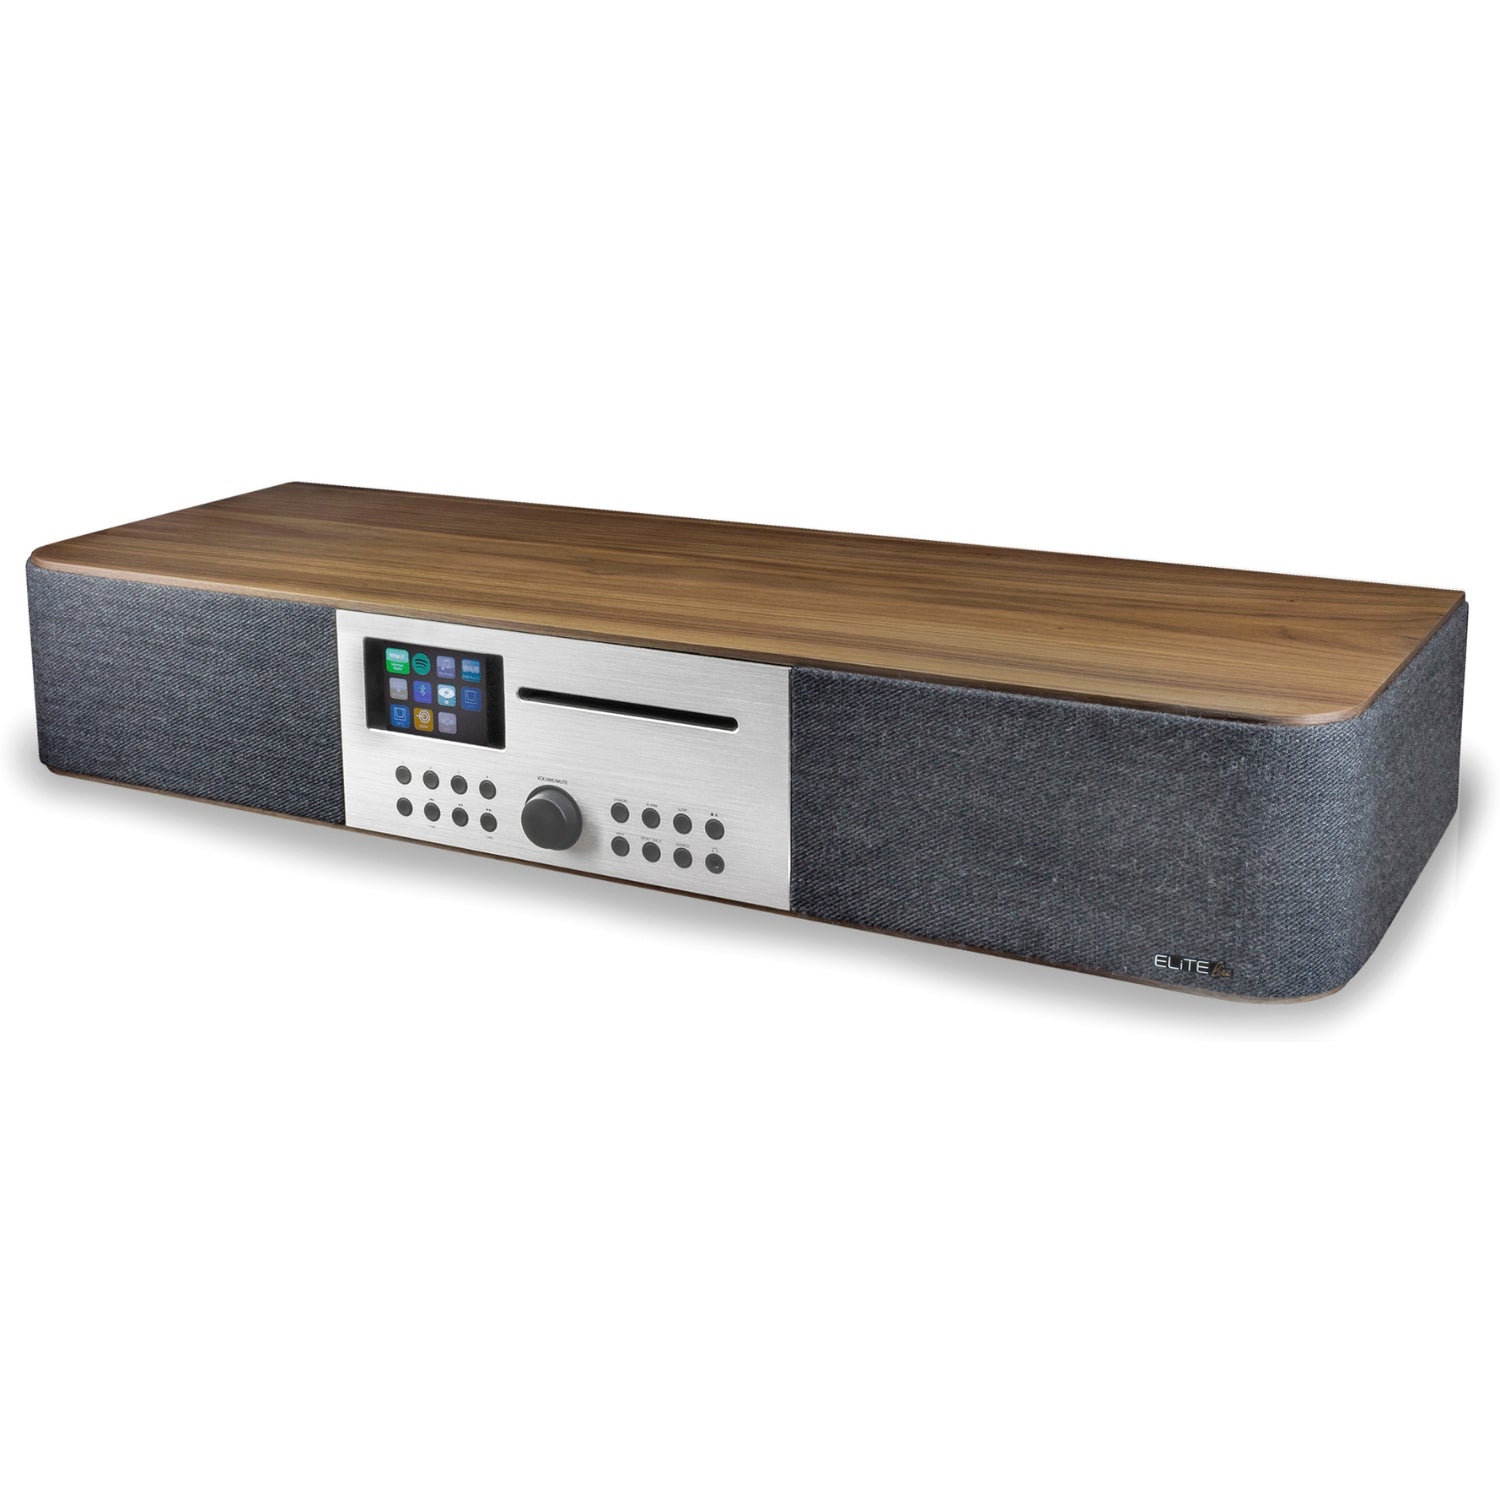 Soundmaster Eliteline ICD2018 Stereoanlage HiFi Anlage Kompaktanlage Internetradio DAB+ UKW-Radio Netzwerk-Player CD Multi-Room und App-Steuerung